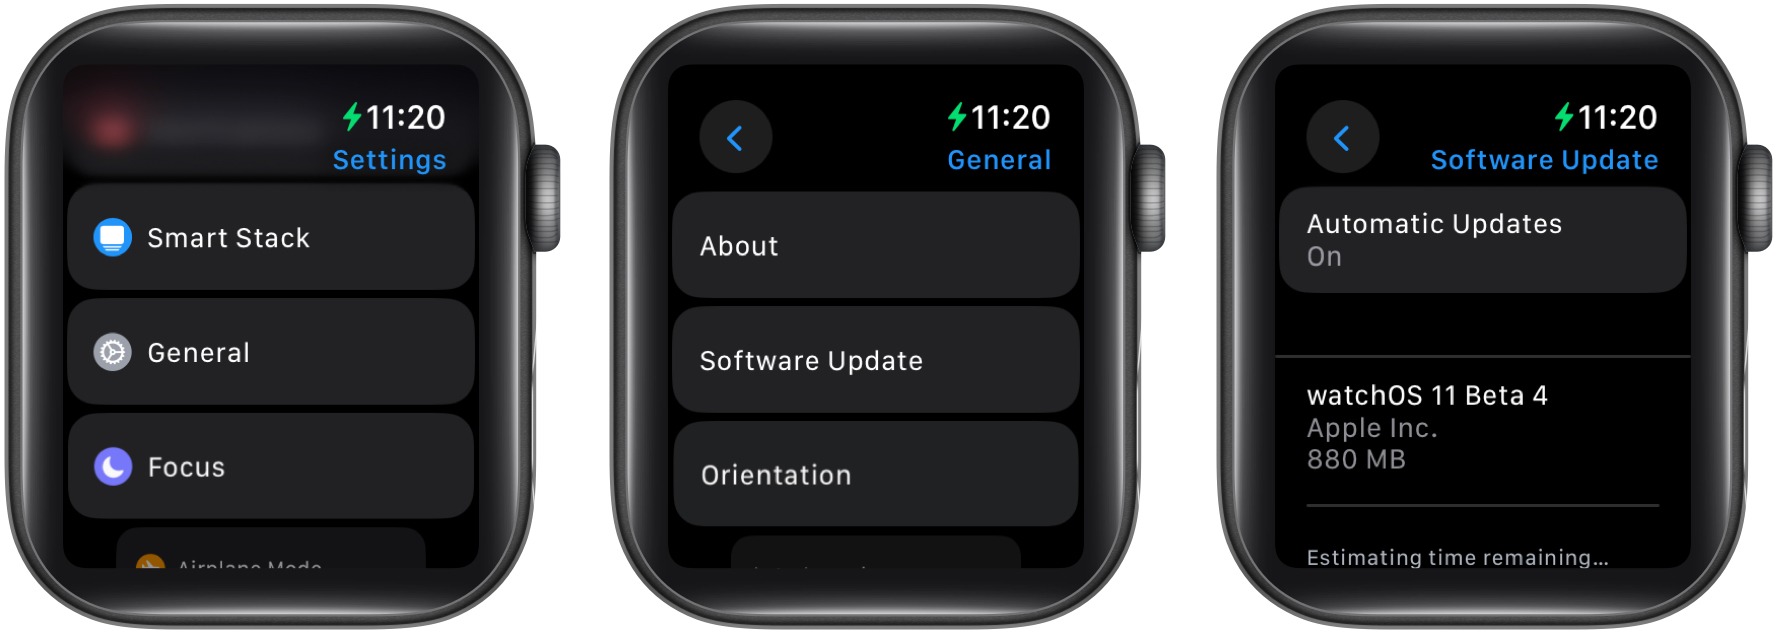 Download watchOS 11 developer beta 4